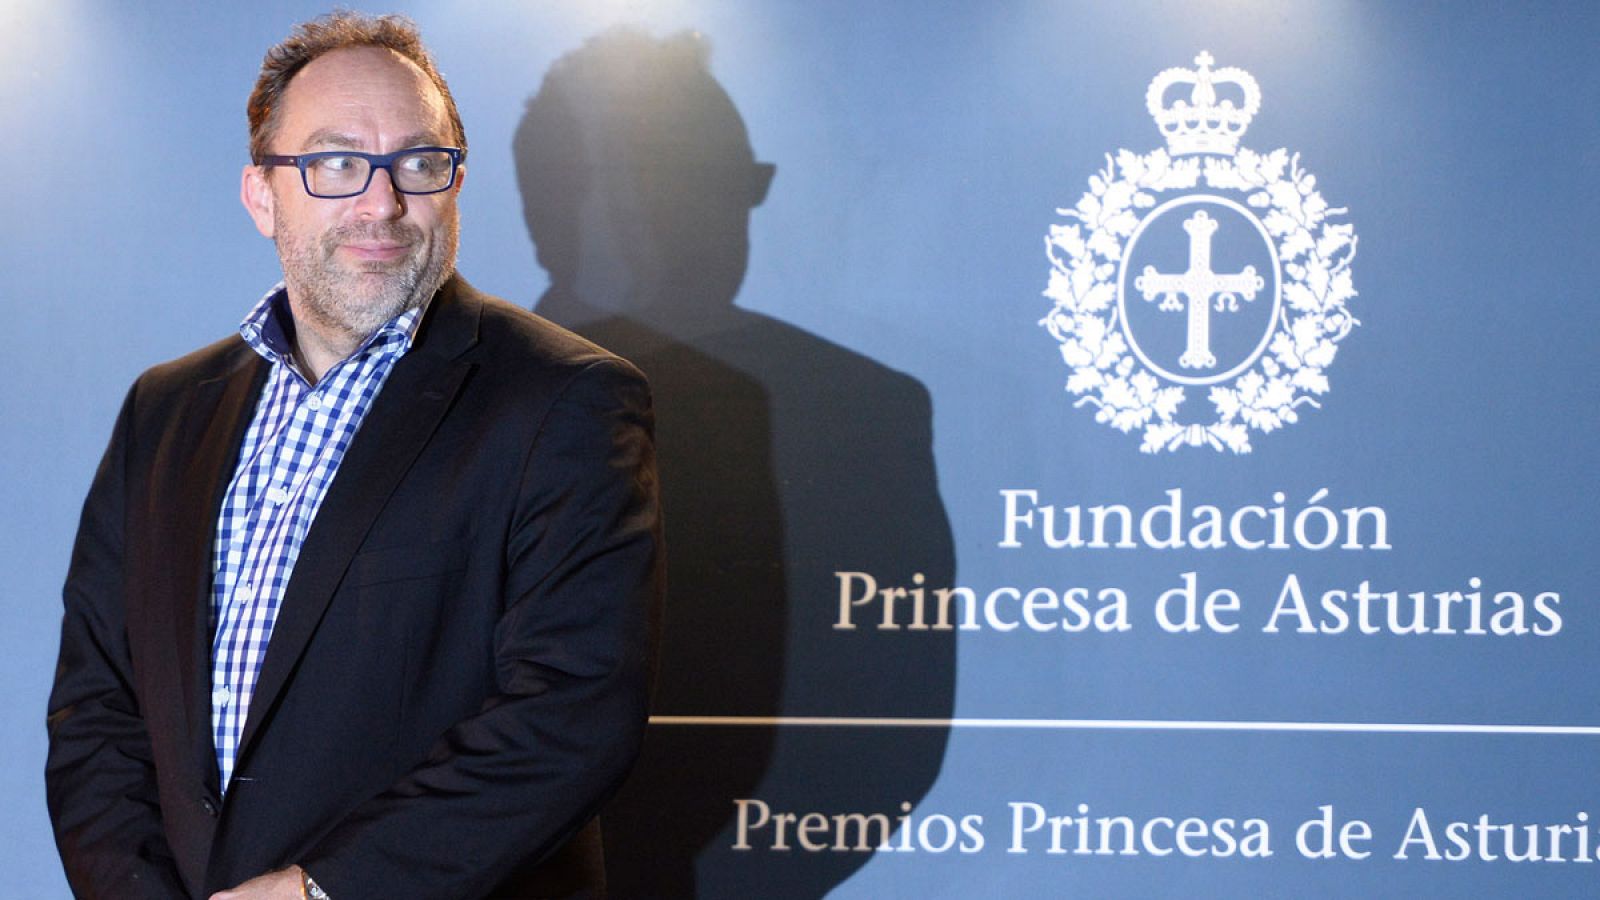 El fundador de Wikipedia Jimmy Wales en Gijón con motivo de la concesión del Premio Princesa de Asturias a la enciclopedia digital